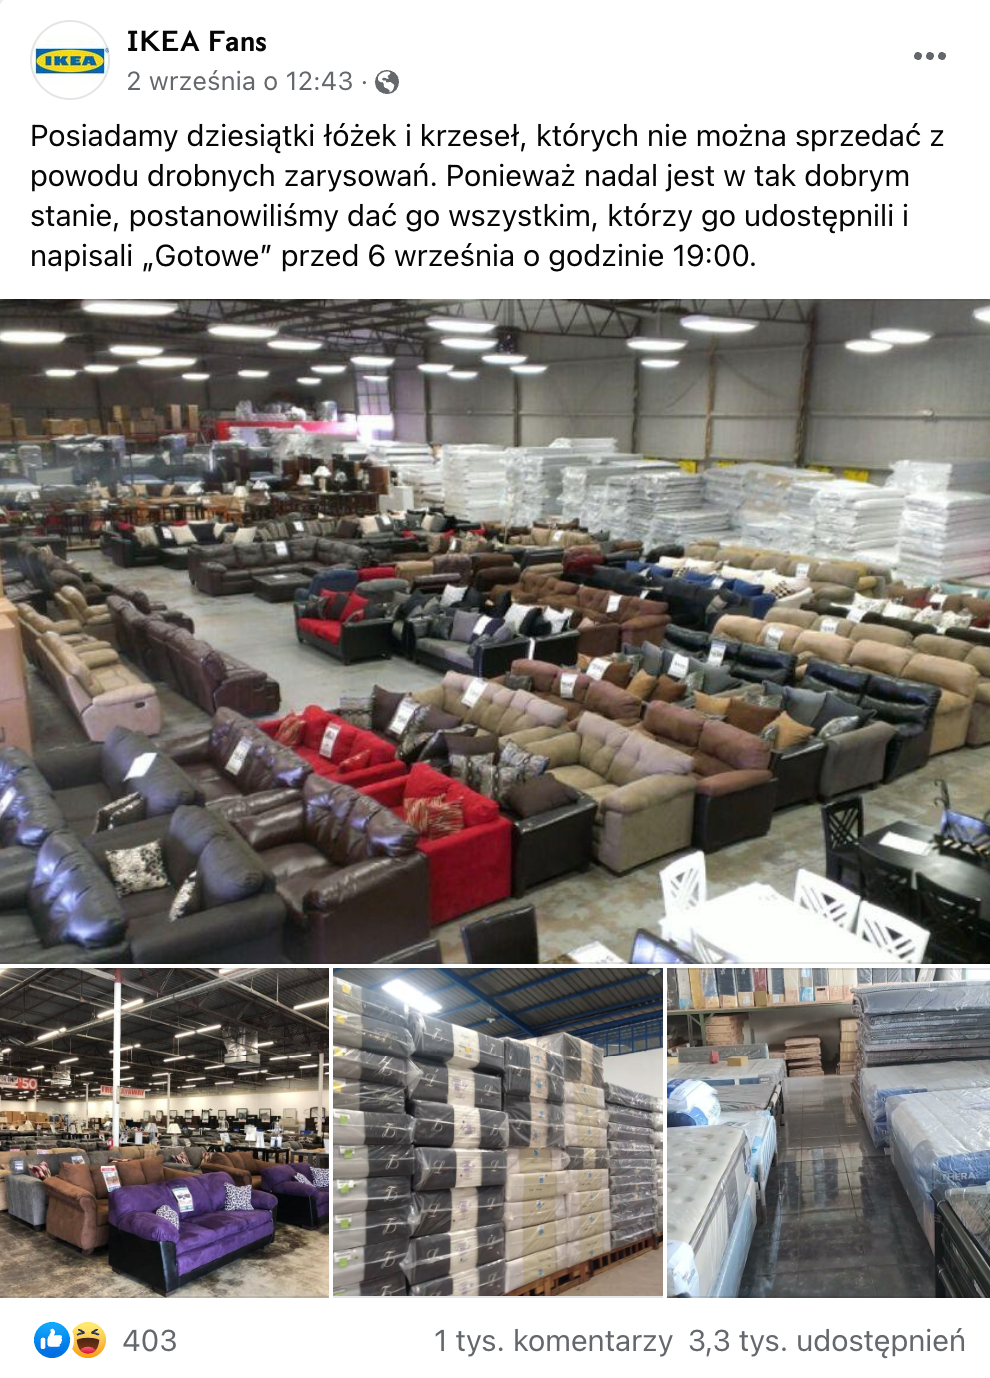 Zrzut ekranu z posta na Facebooku z przykładową akcją promocyjną. W tym przypadku oszuści podszywają się pod profil sklepu Ikea i oferują rzekomo darmowe meble. Widoczne są zdjęcia mebli.